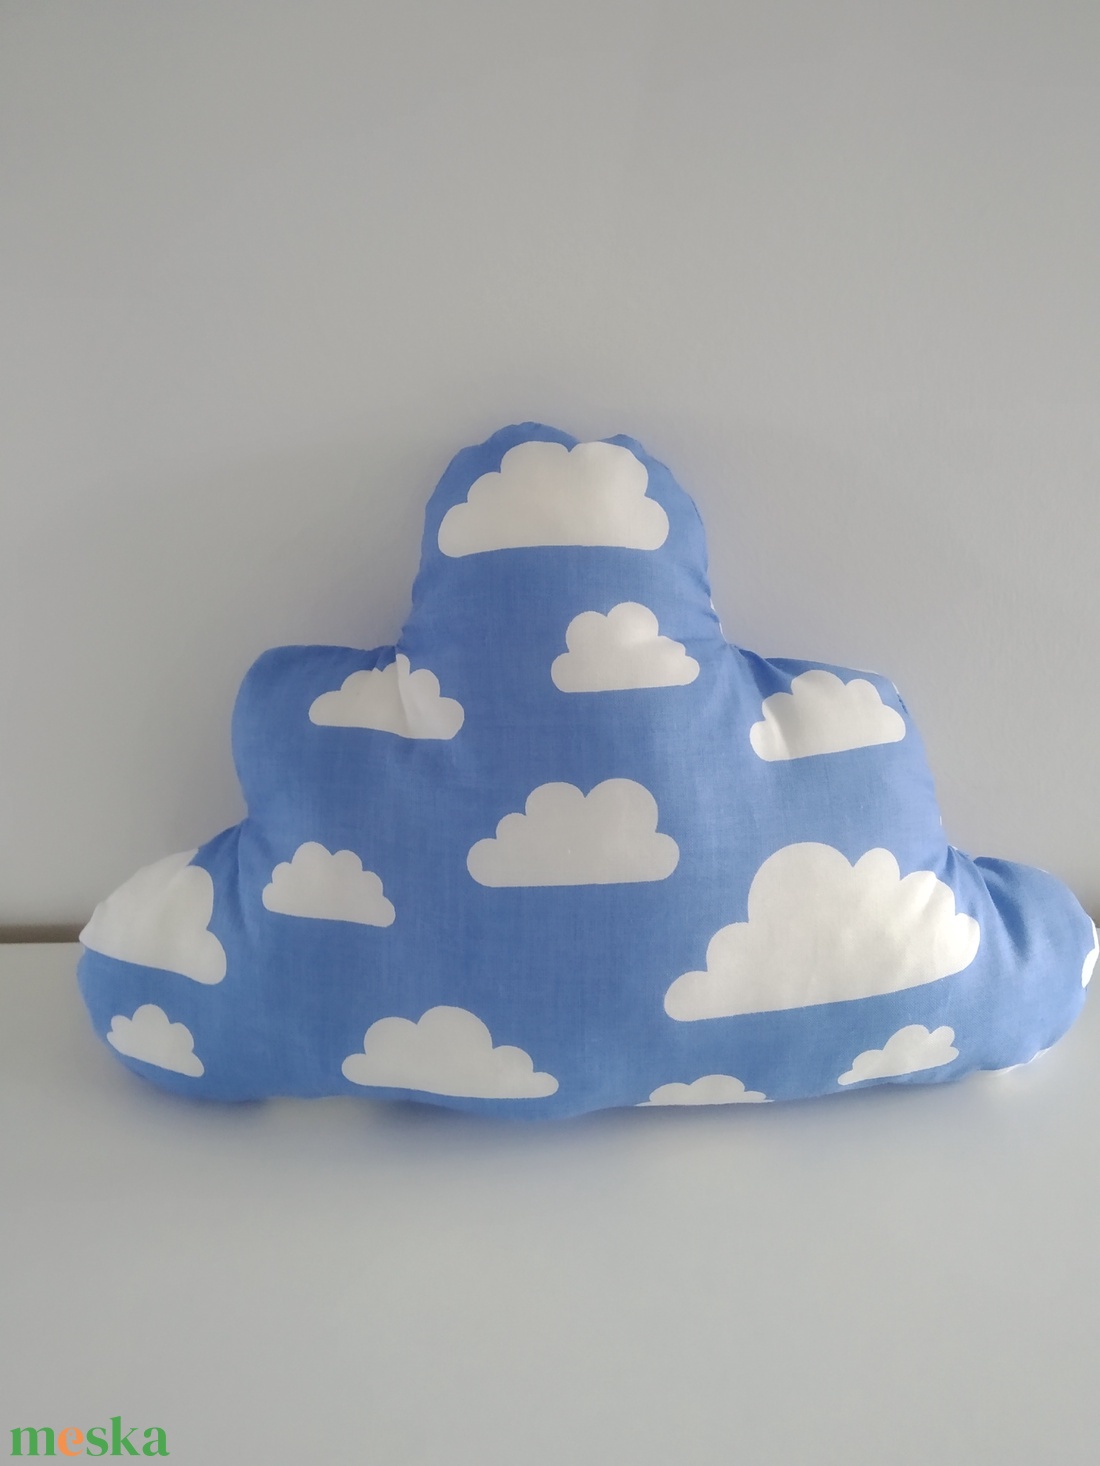 Felhő párna - felhőpárna - Felhő alakú párna - Felhő mintás - Felhő formájú párna - forma párna - figura párna  - otthon & lakás - babaszoba, gyerekszoba - gyerek díszpárna - Meska.hu